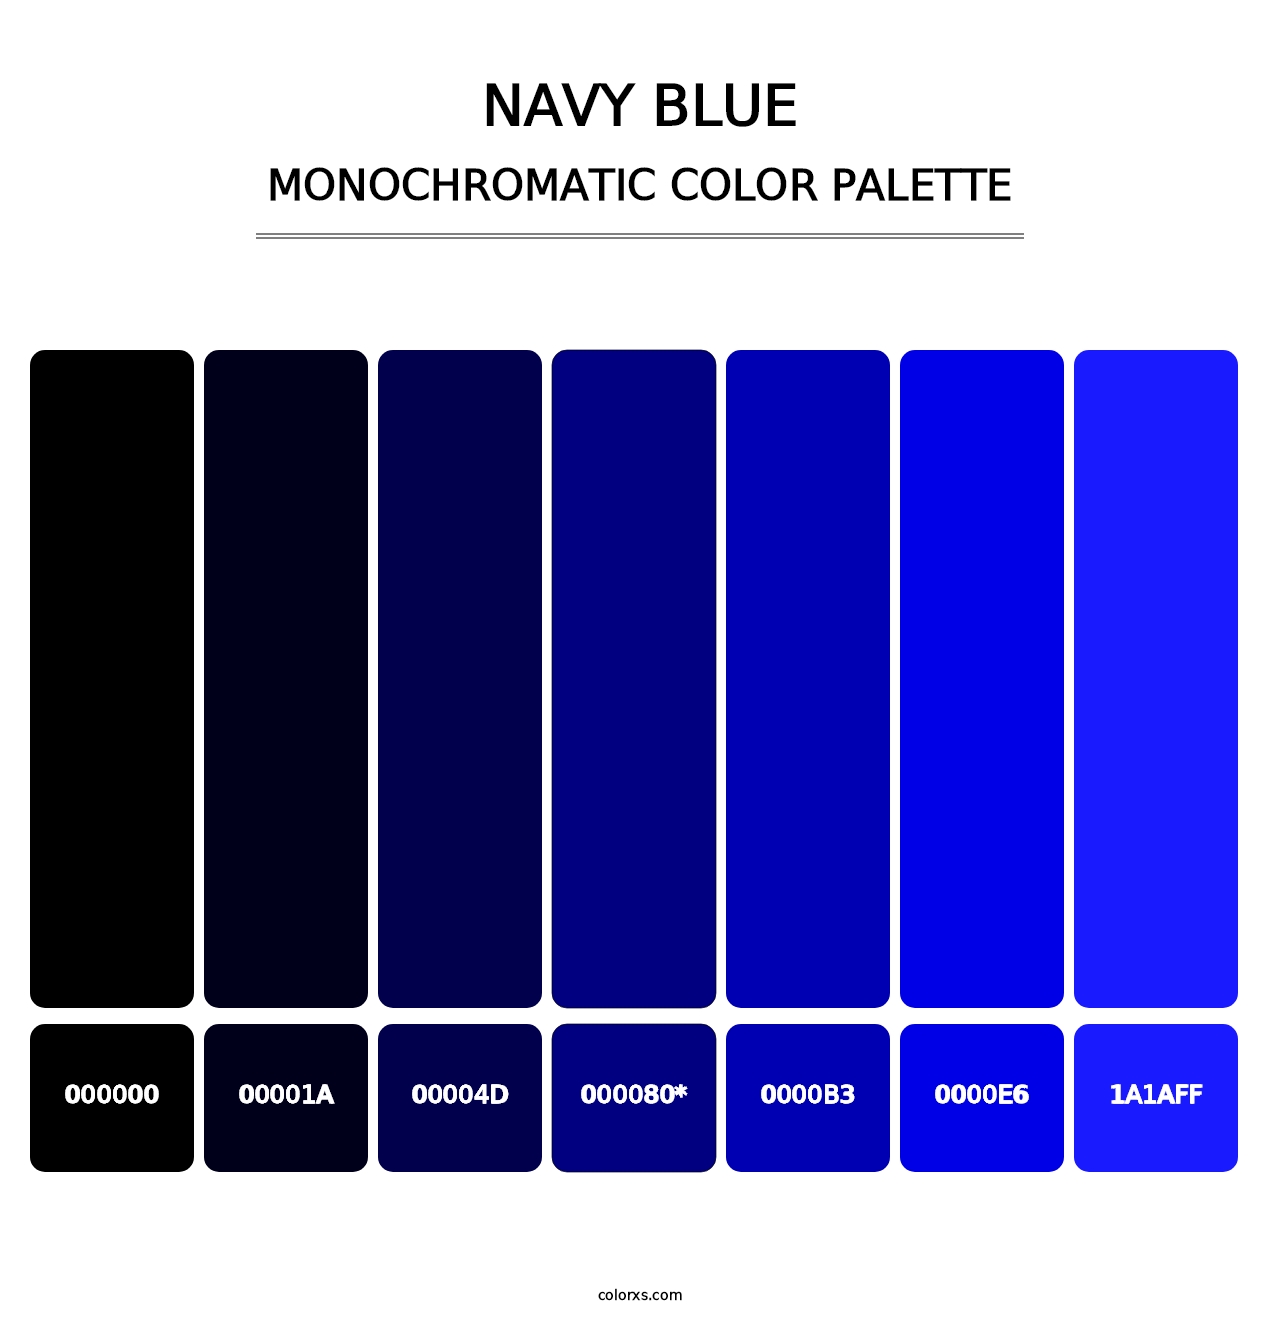 Navy Blue - Monochromatic Color Palette